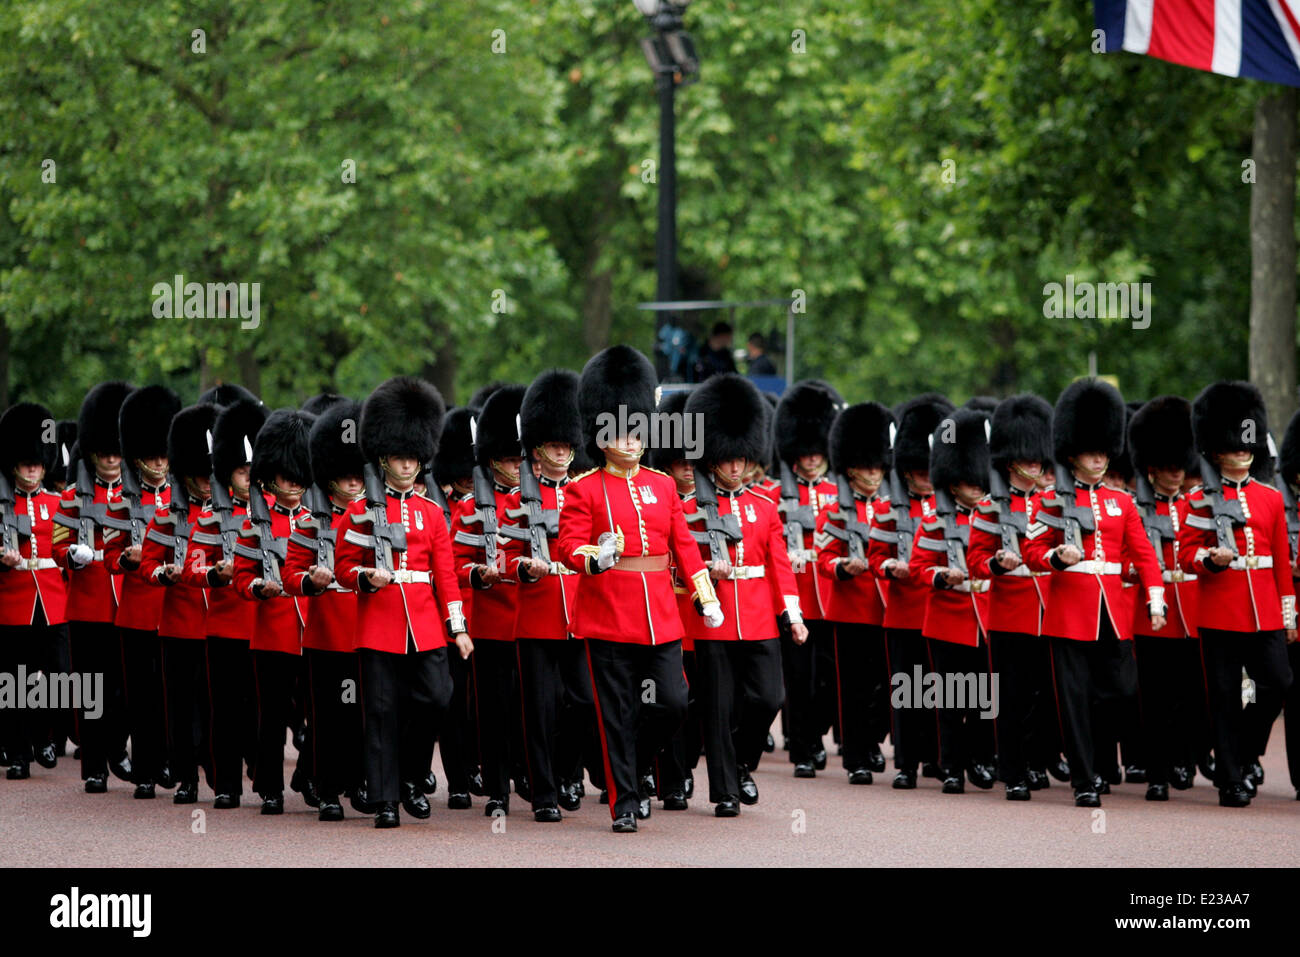 Londres, Reino Unido. El 14 de junio de 2014. Los miembros de la guardia de la reina durante marzo Trooping el color en Londres el 14 de junio de 2014. La ceremonia de Trooping el color es para celebrar el cumpleaños oficial del soberano. Crédito: Bimal Gautam/Xinhua/Alamy Live News Foto de stock